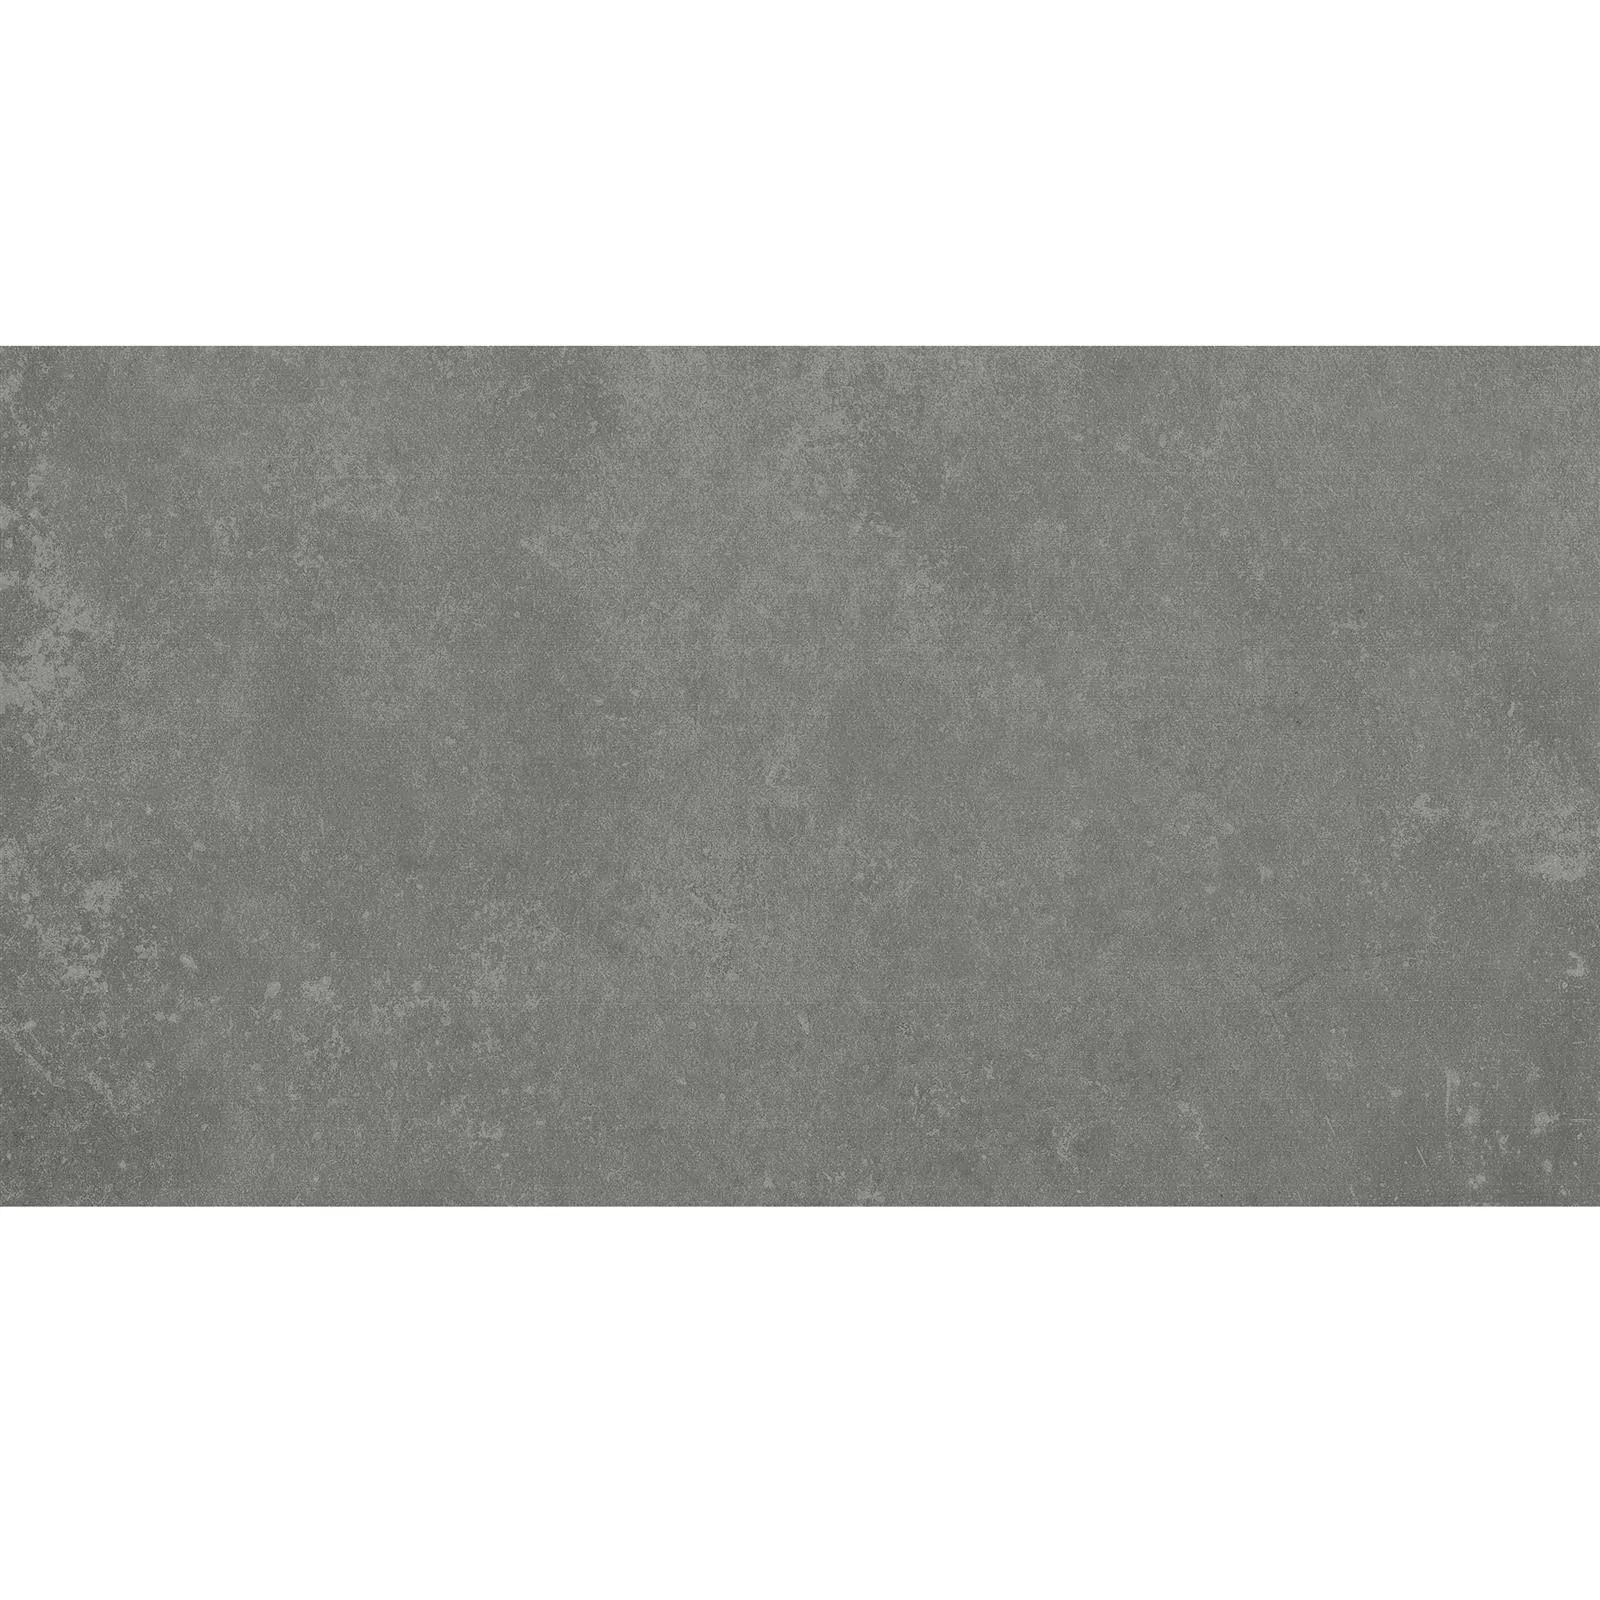 Πλακάκια Δαπέδου Nepal Σκούρο Γκρι 30x60x0,7cm